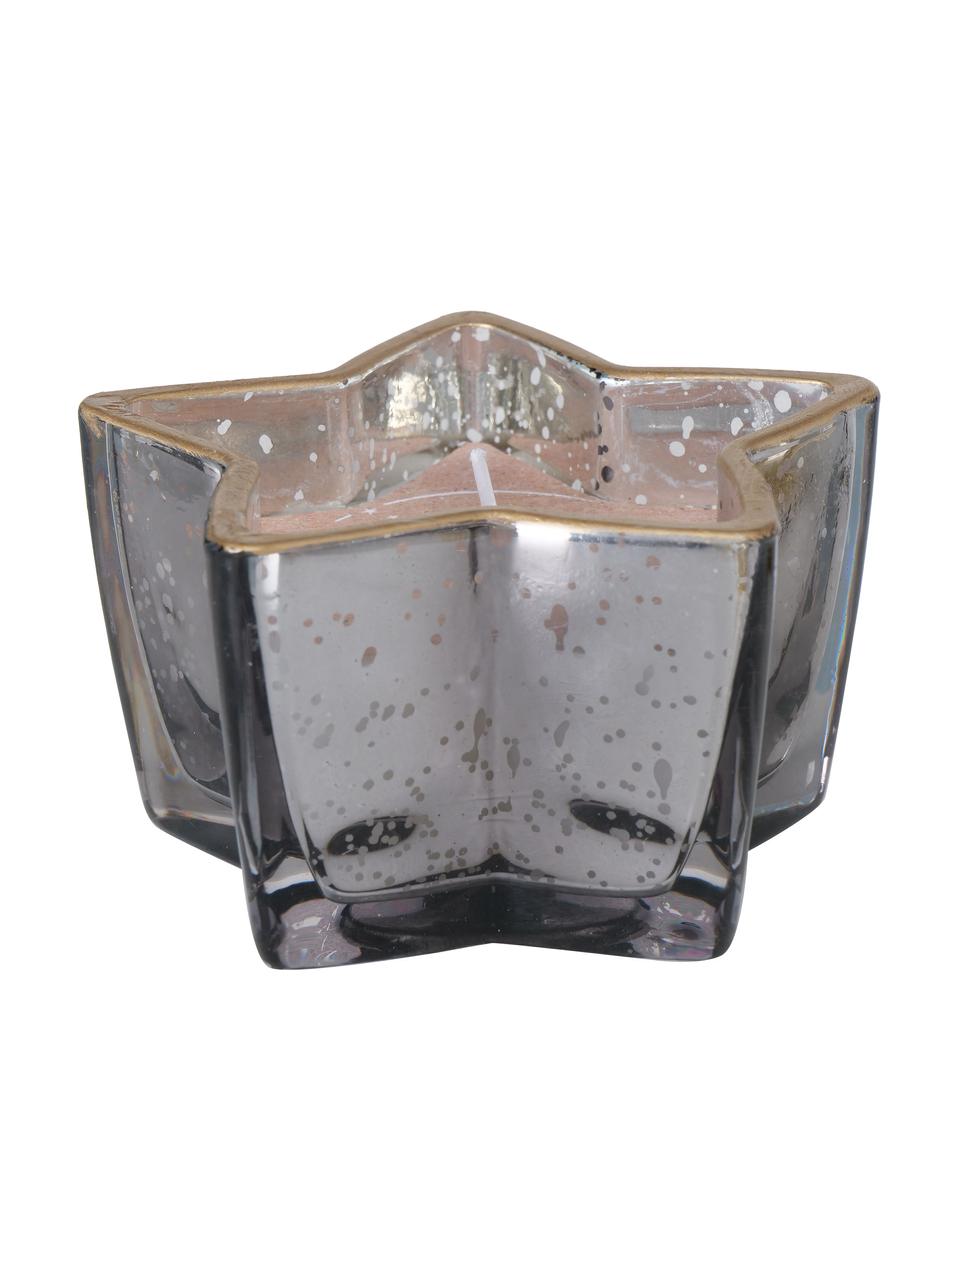 Deko-Kerzen Delisa in Glasbehältern, 3er-Set, Behälter: Glas, Bunt, B 10 x H 6 cm